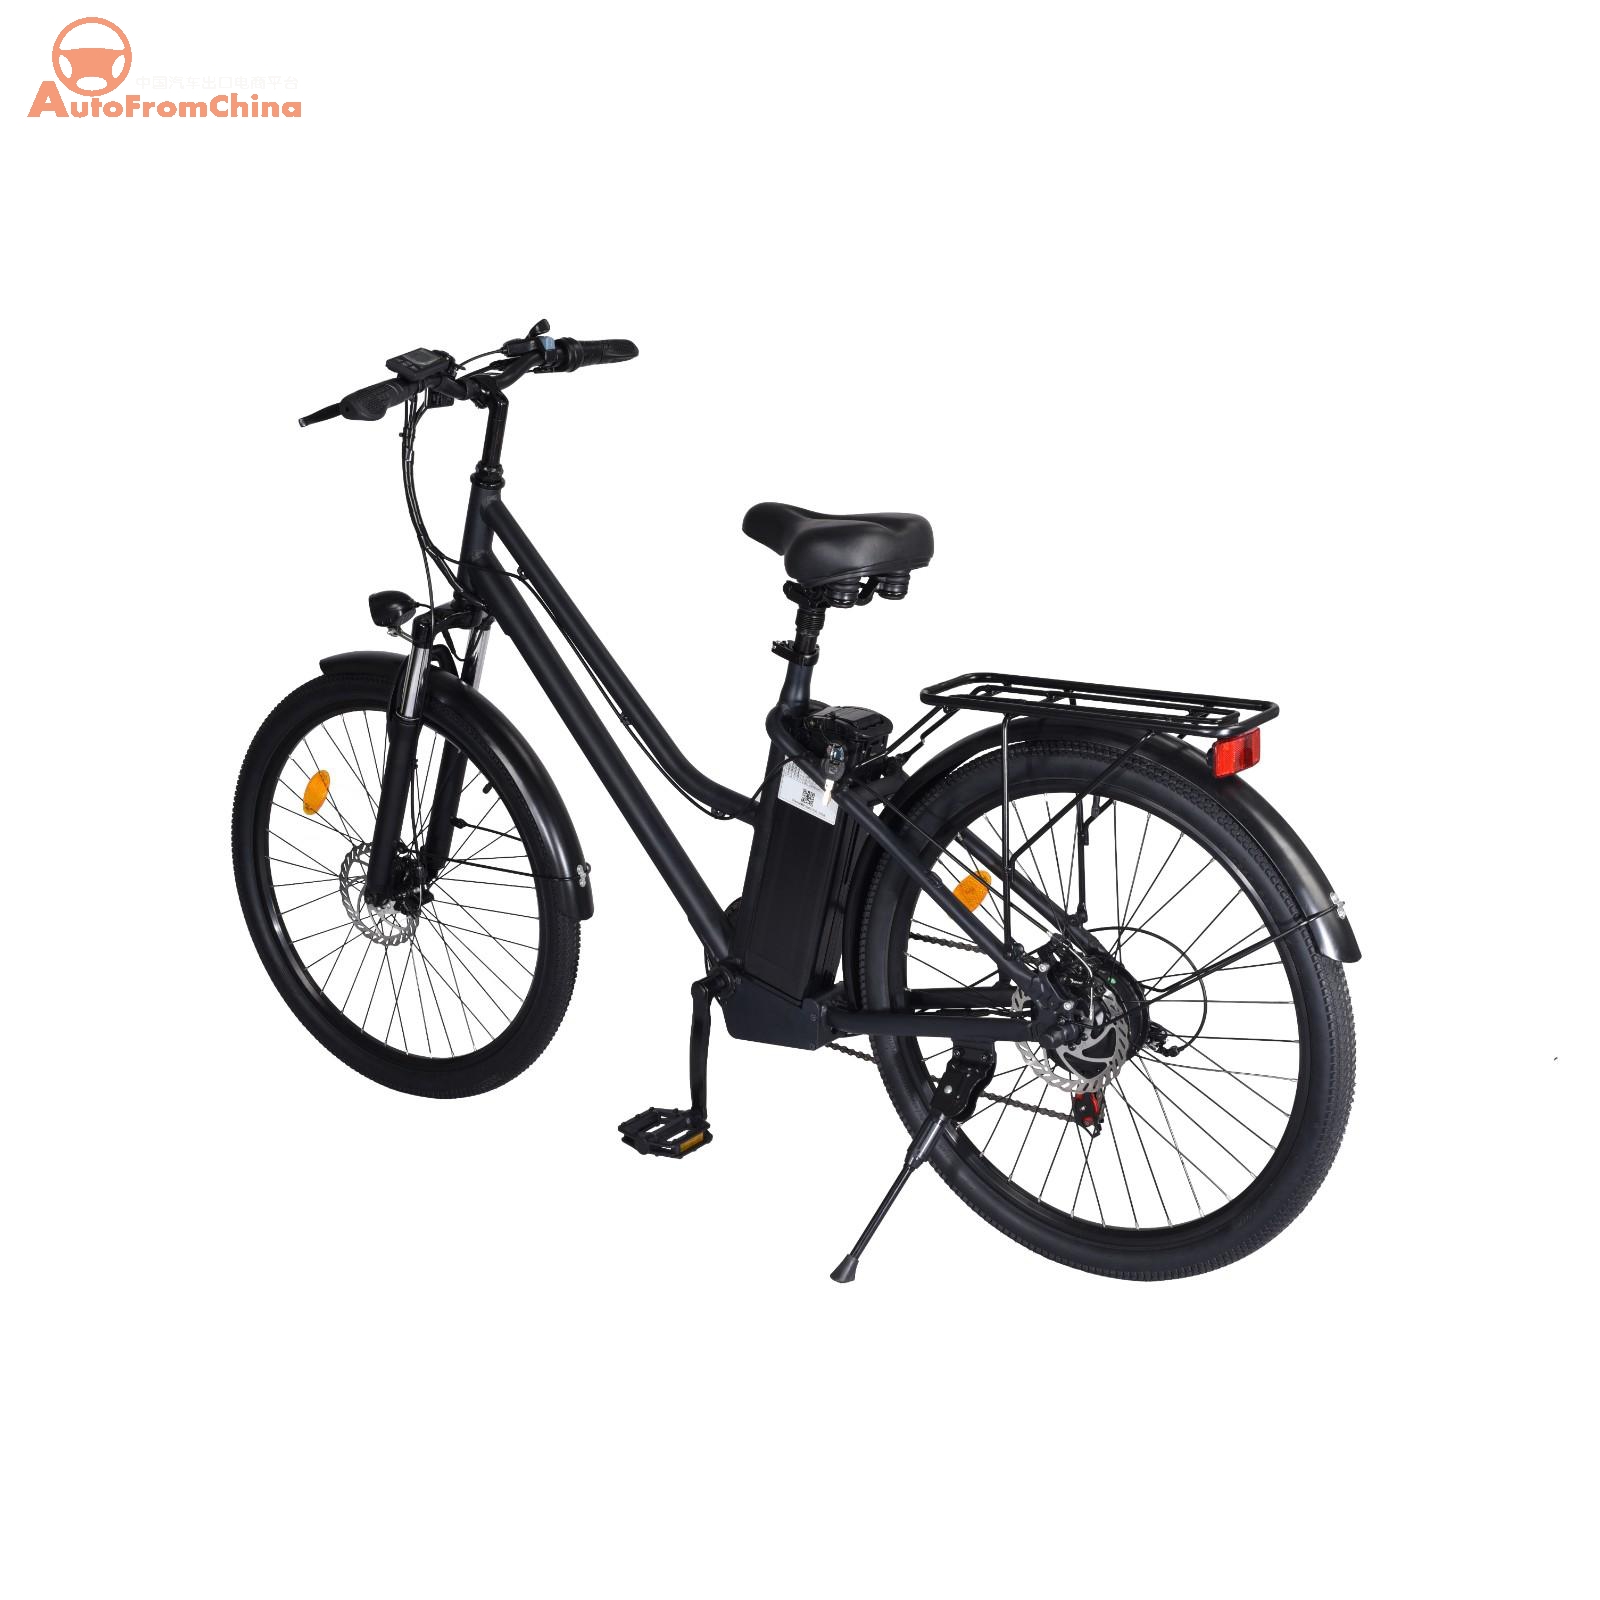 EBike026 Electric Bike Factory in China - Best Adult Electric Bicycles - EBikes China - Electric Bikes for Aadults